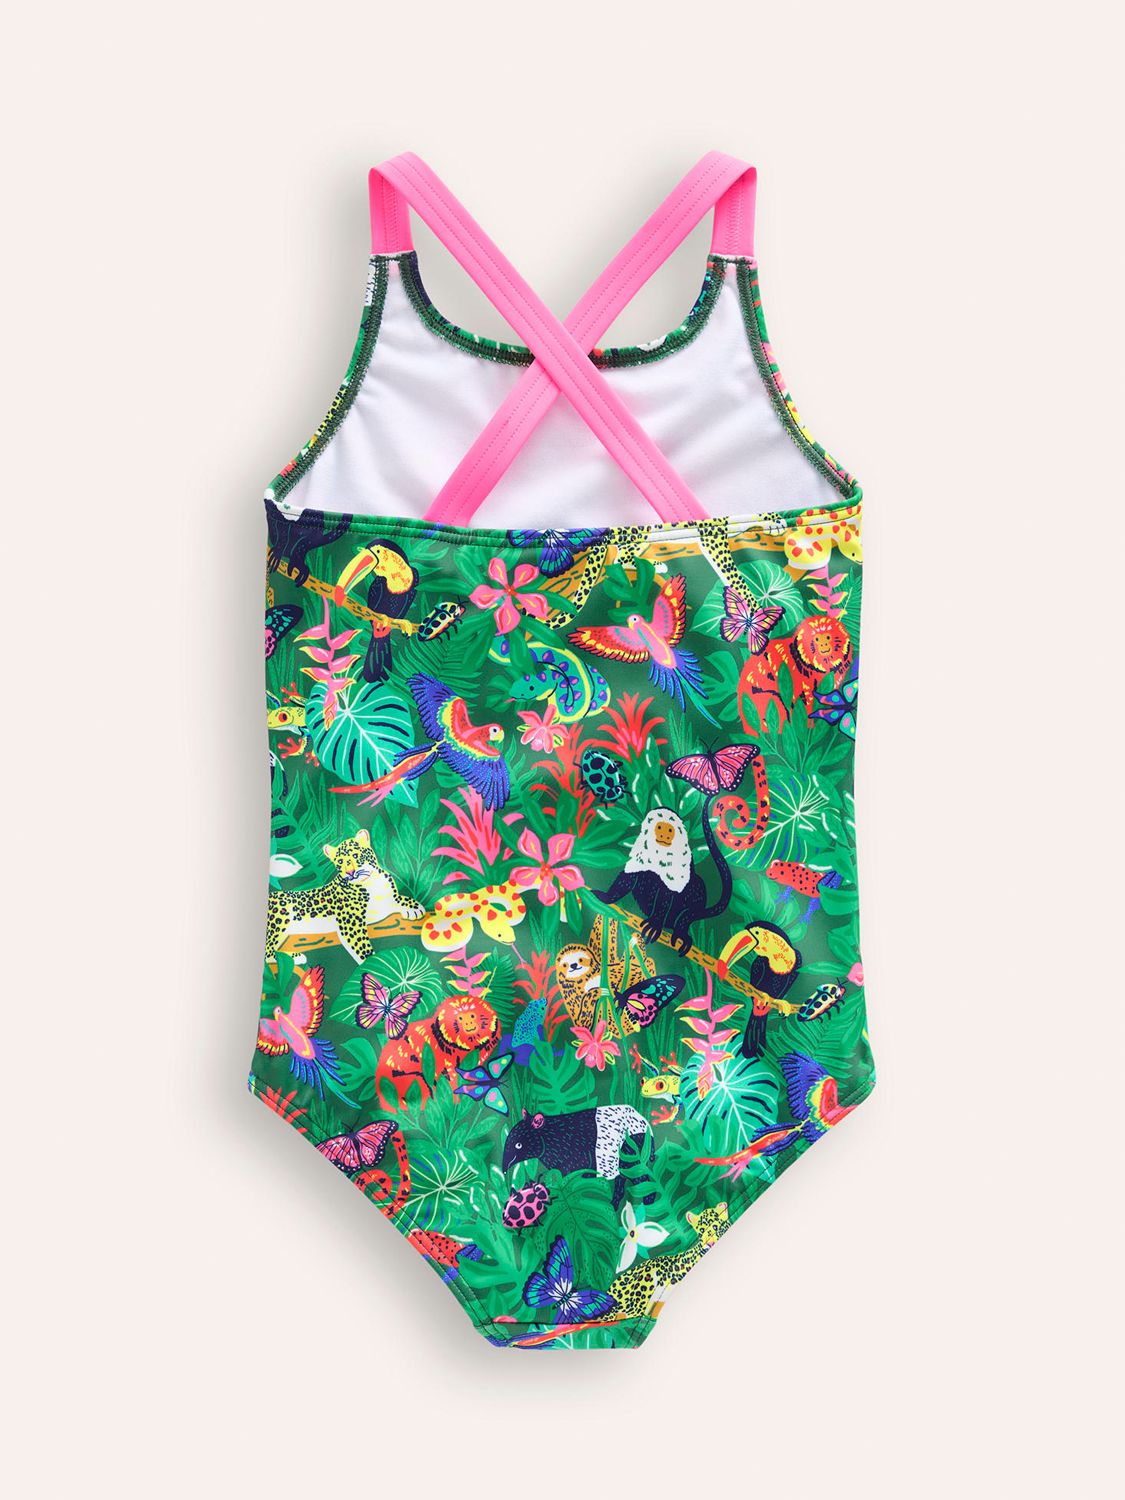 Mini Boden Kids' Cross-Back Swimsuit, Green Rainforest, 2-3 years